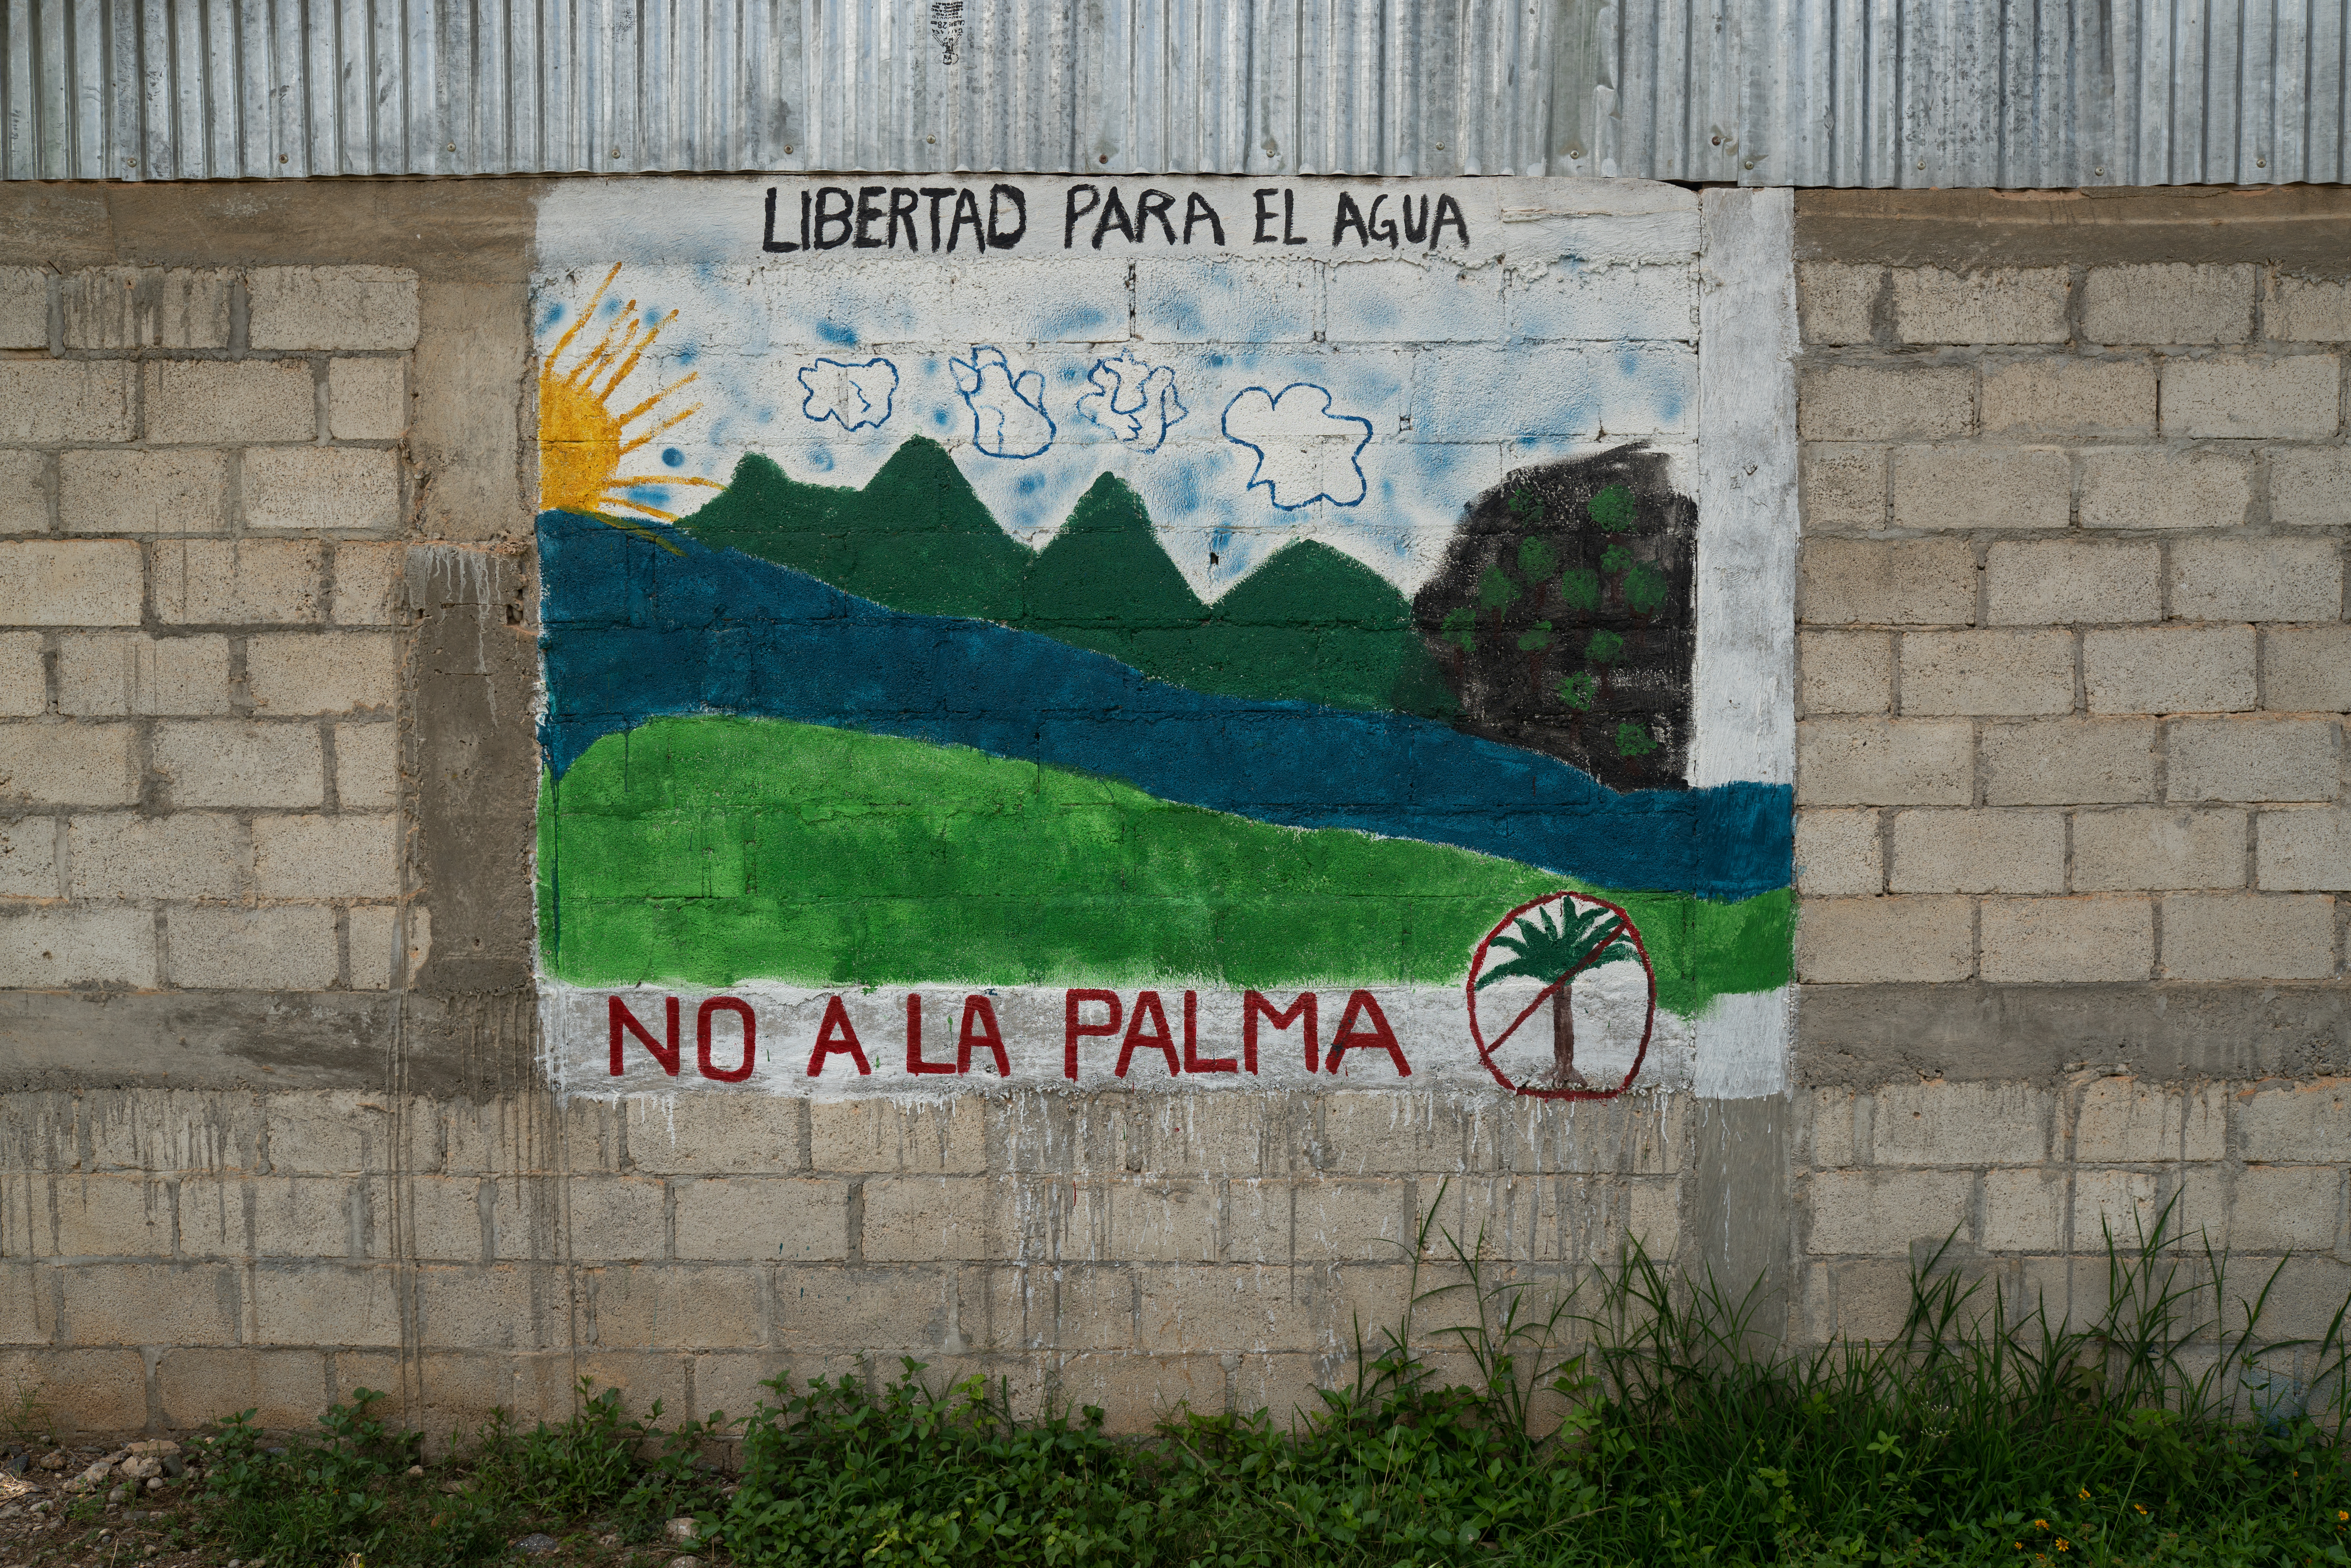 Wandbild im nördlichen Guatemala mit der Aussage: Freiheit für Wasser. Nein zur Ölpalme.